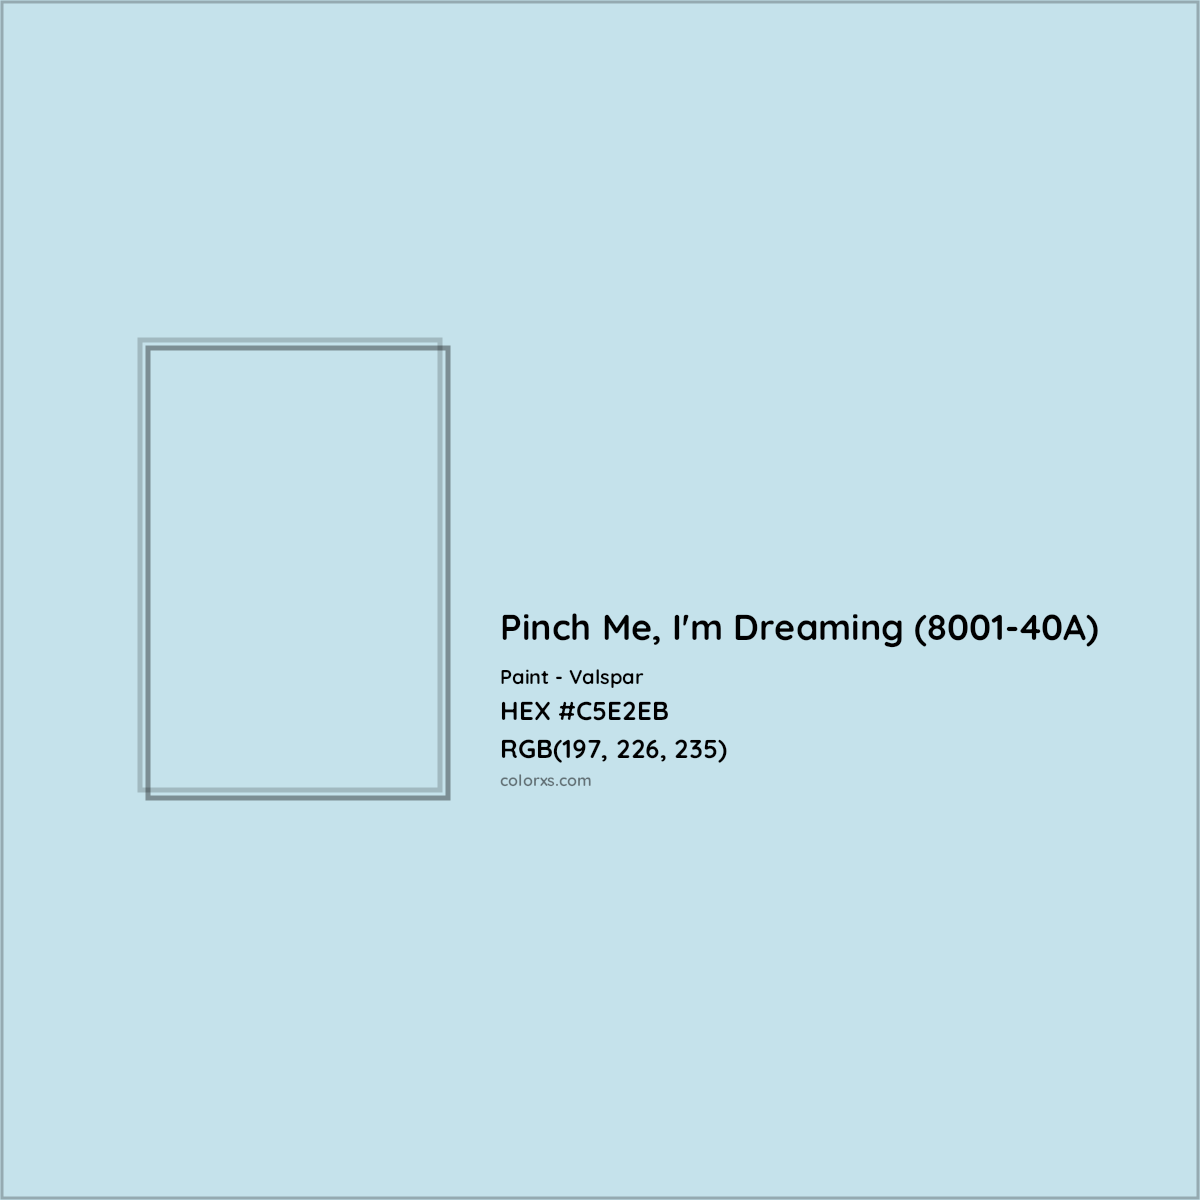 HEX #C5E2EB Pinch Me, I'm Dreaming (8001-40A) Paint Valspar - Color Code